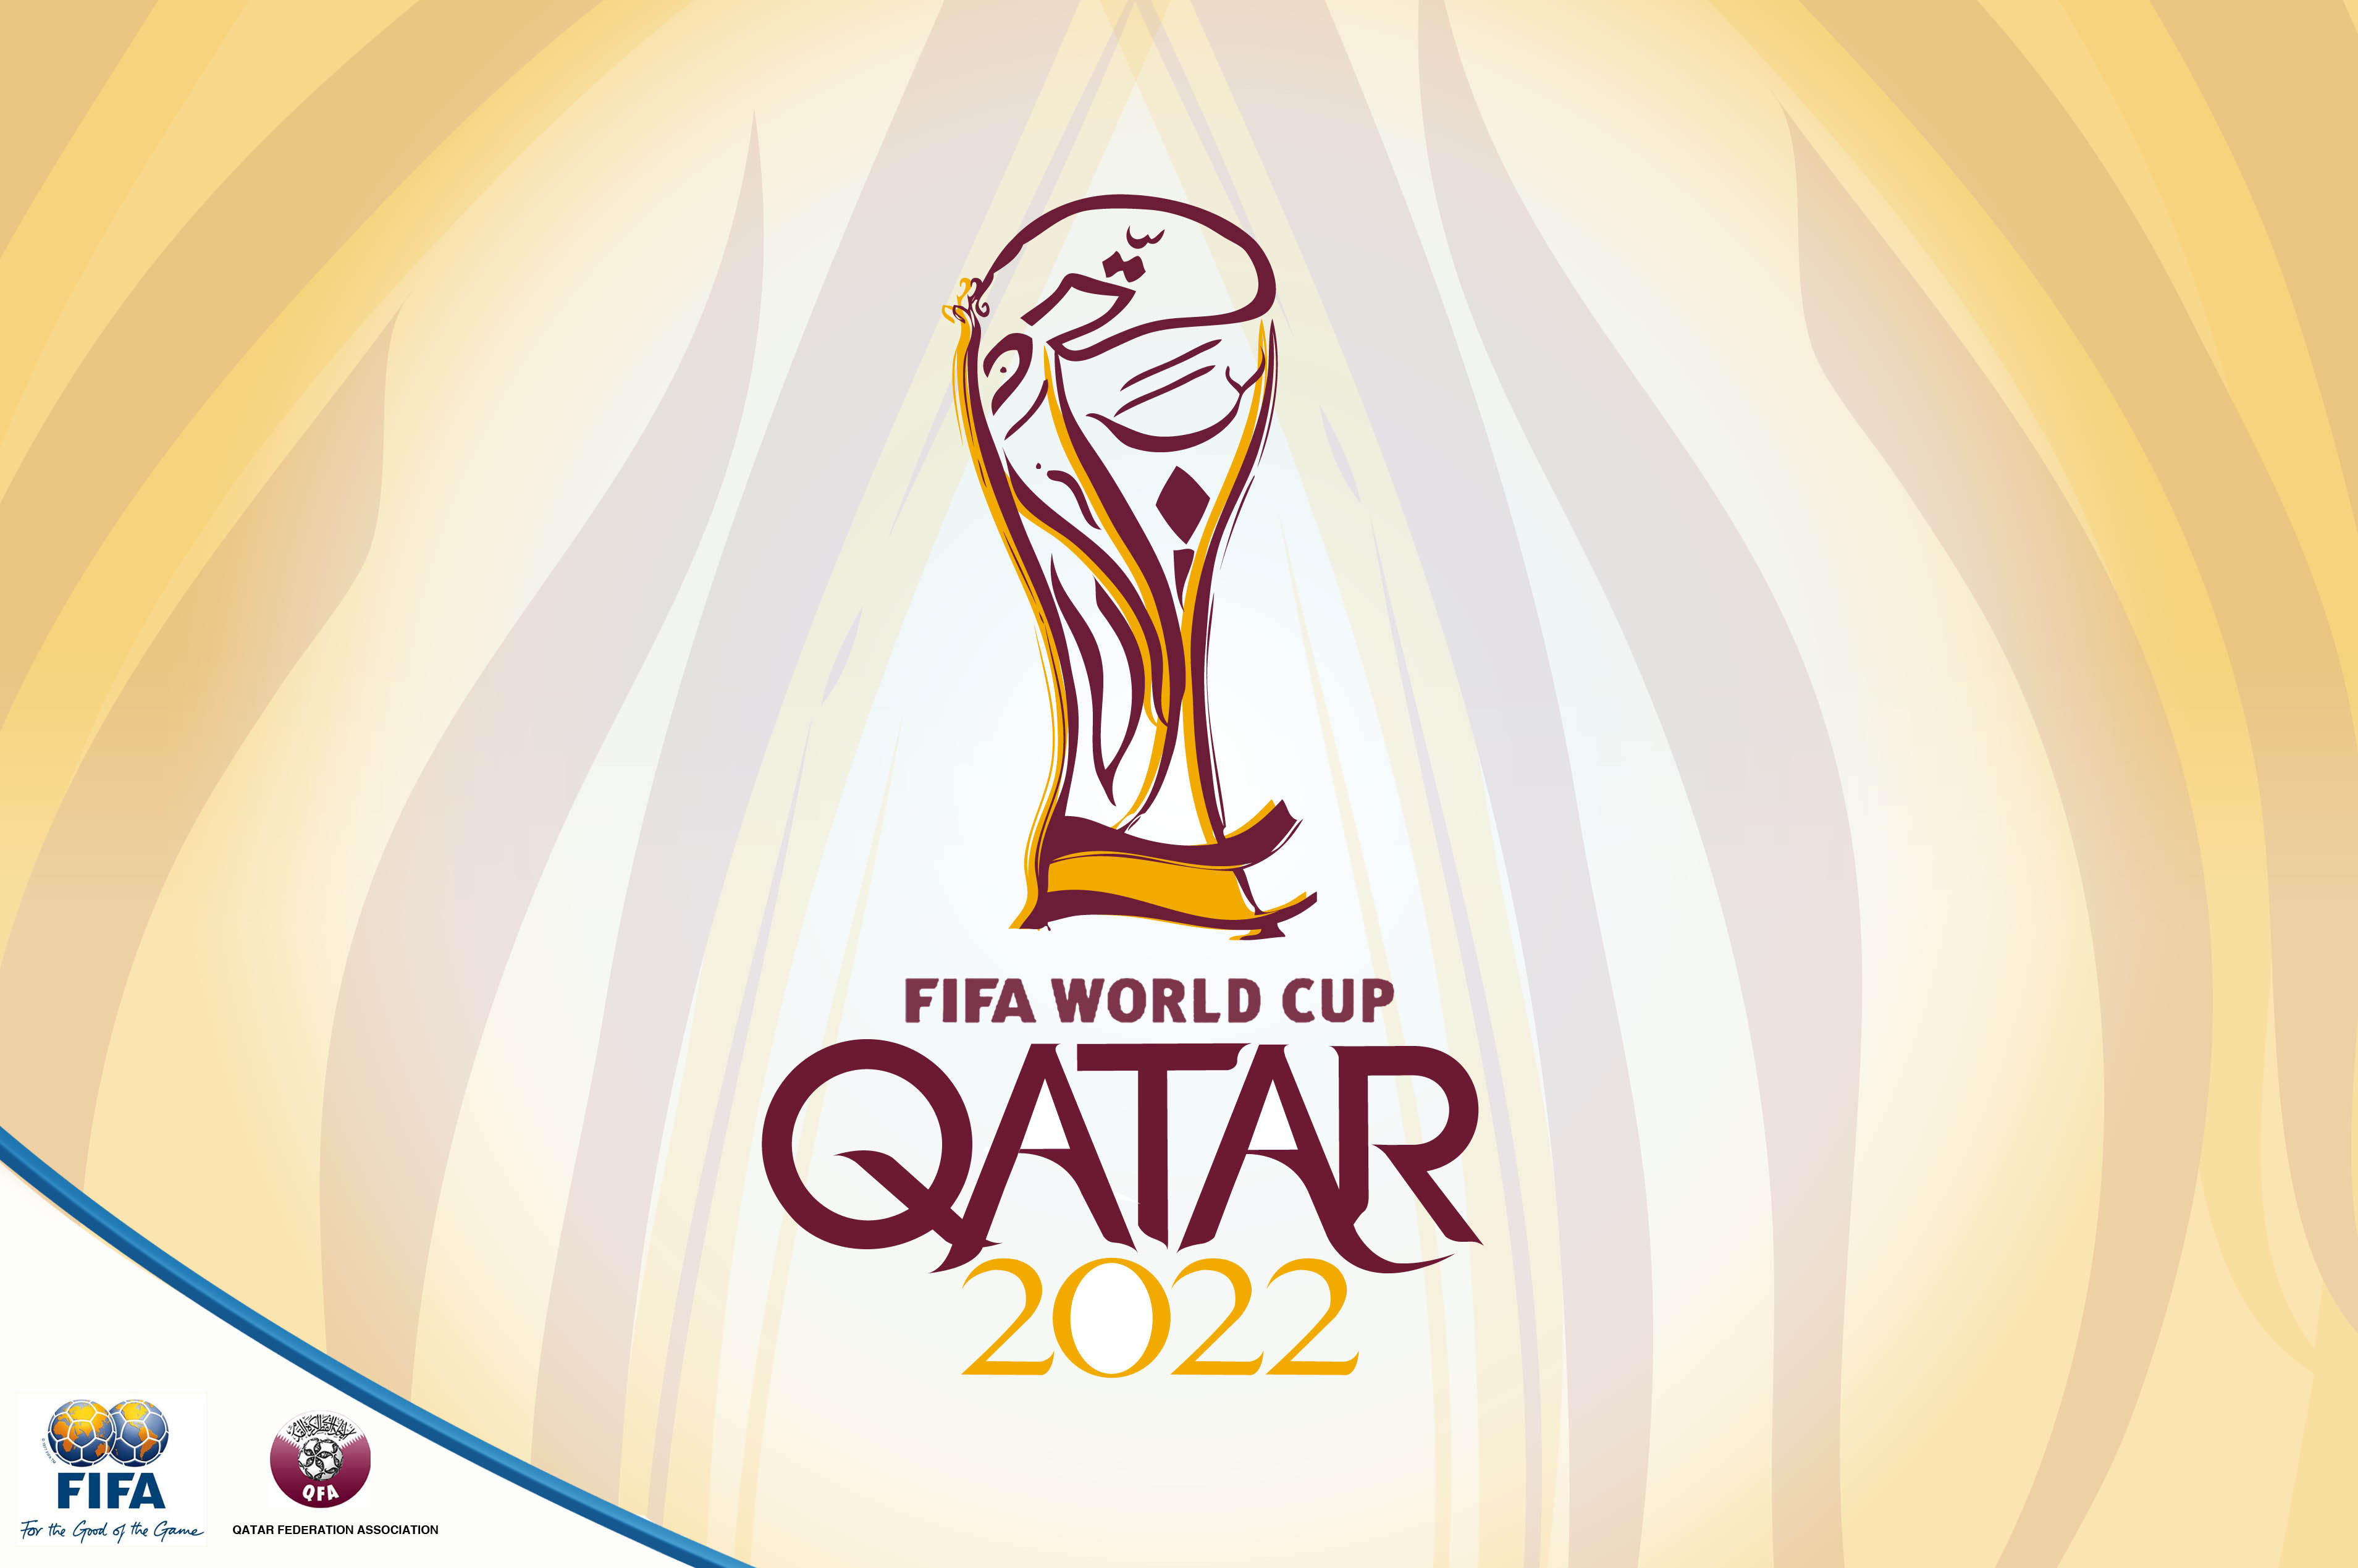 फिफाद्वारा कतारमा हुने विश्वकप फुटबल २०२२ को खेल तालिका सार्वजनिक